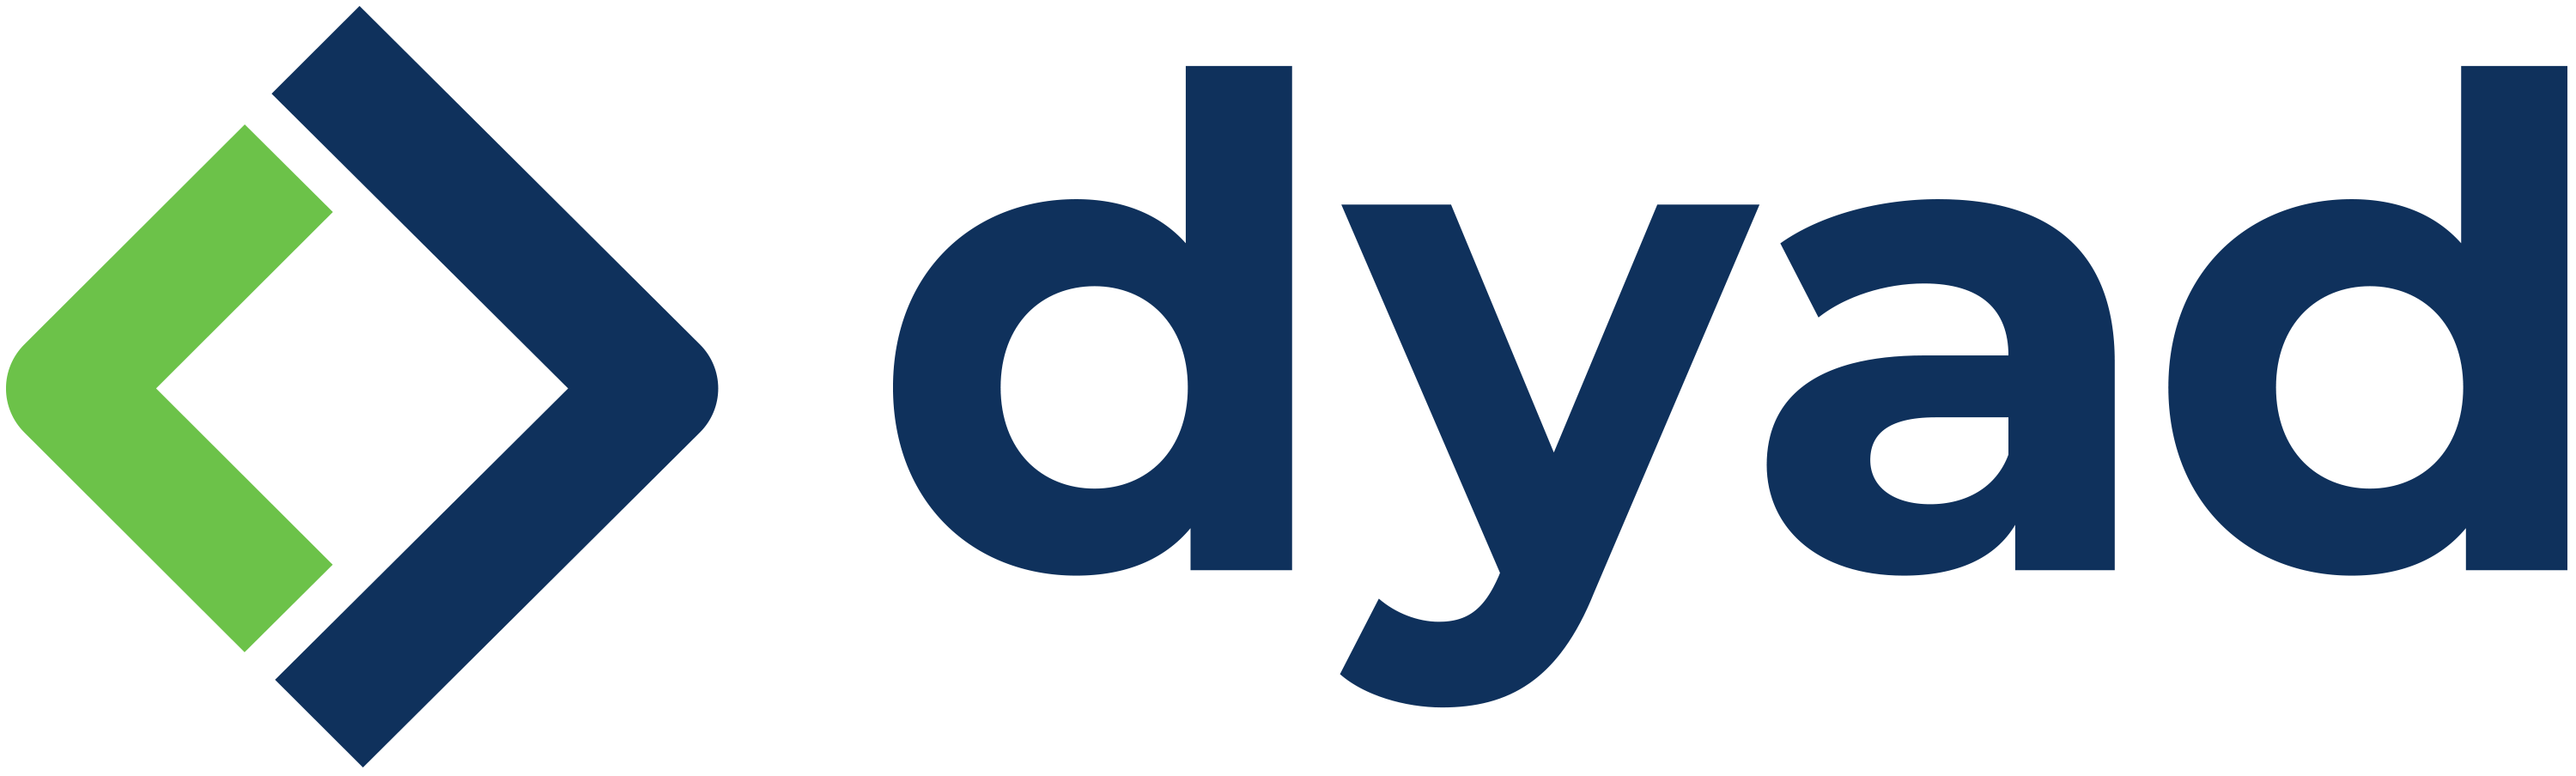 dyad logo